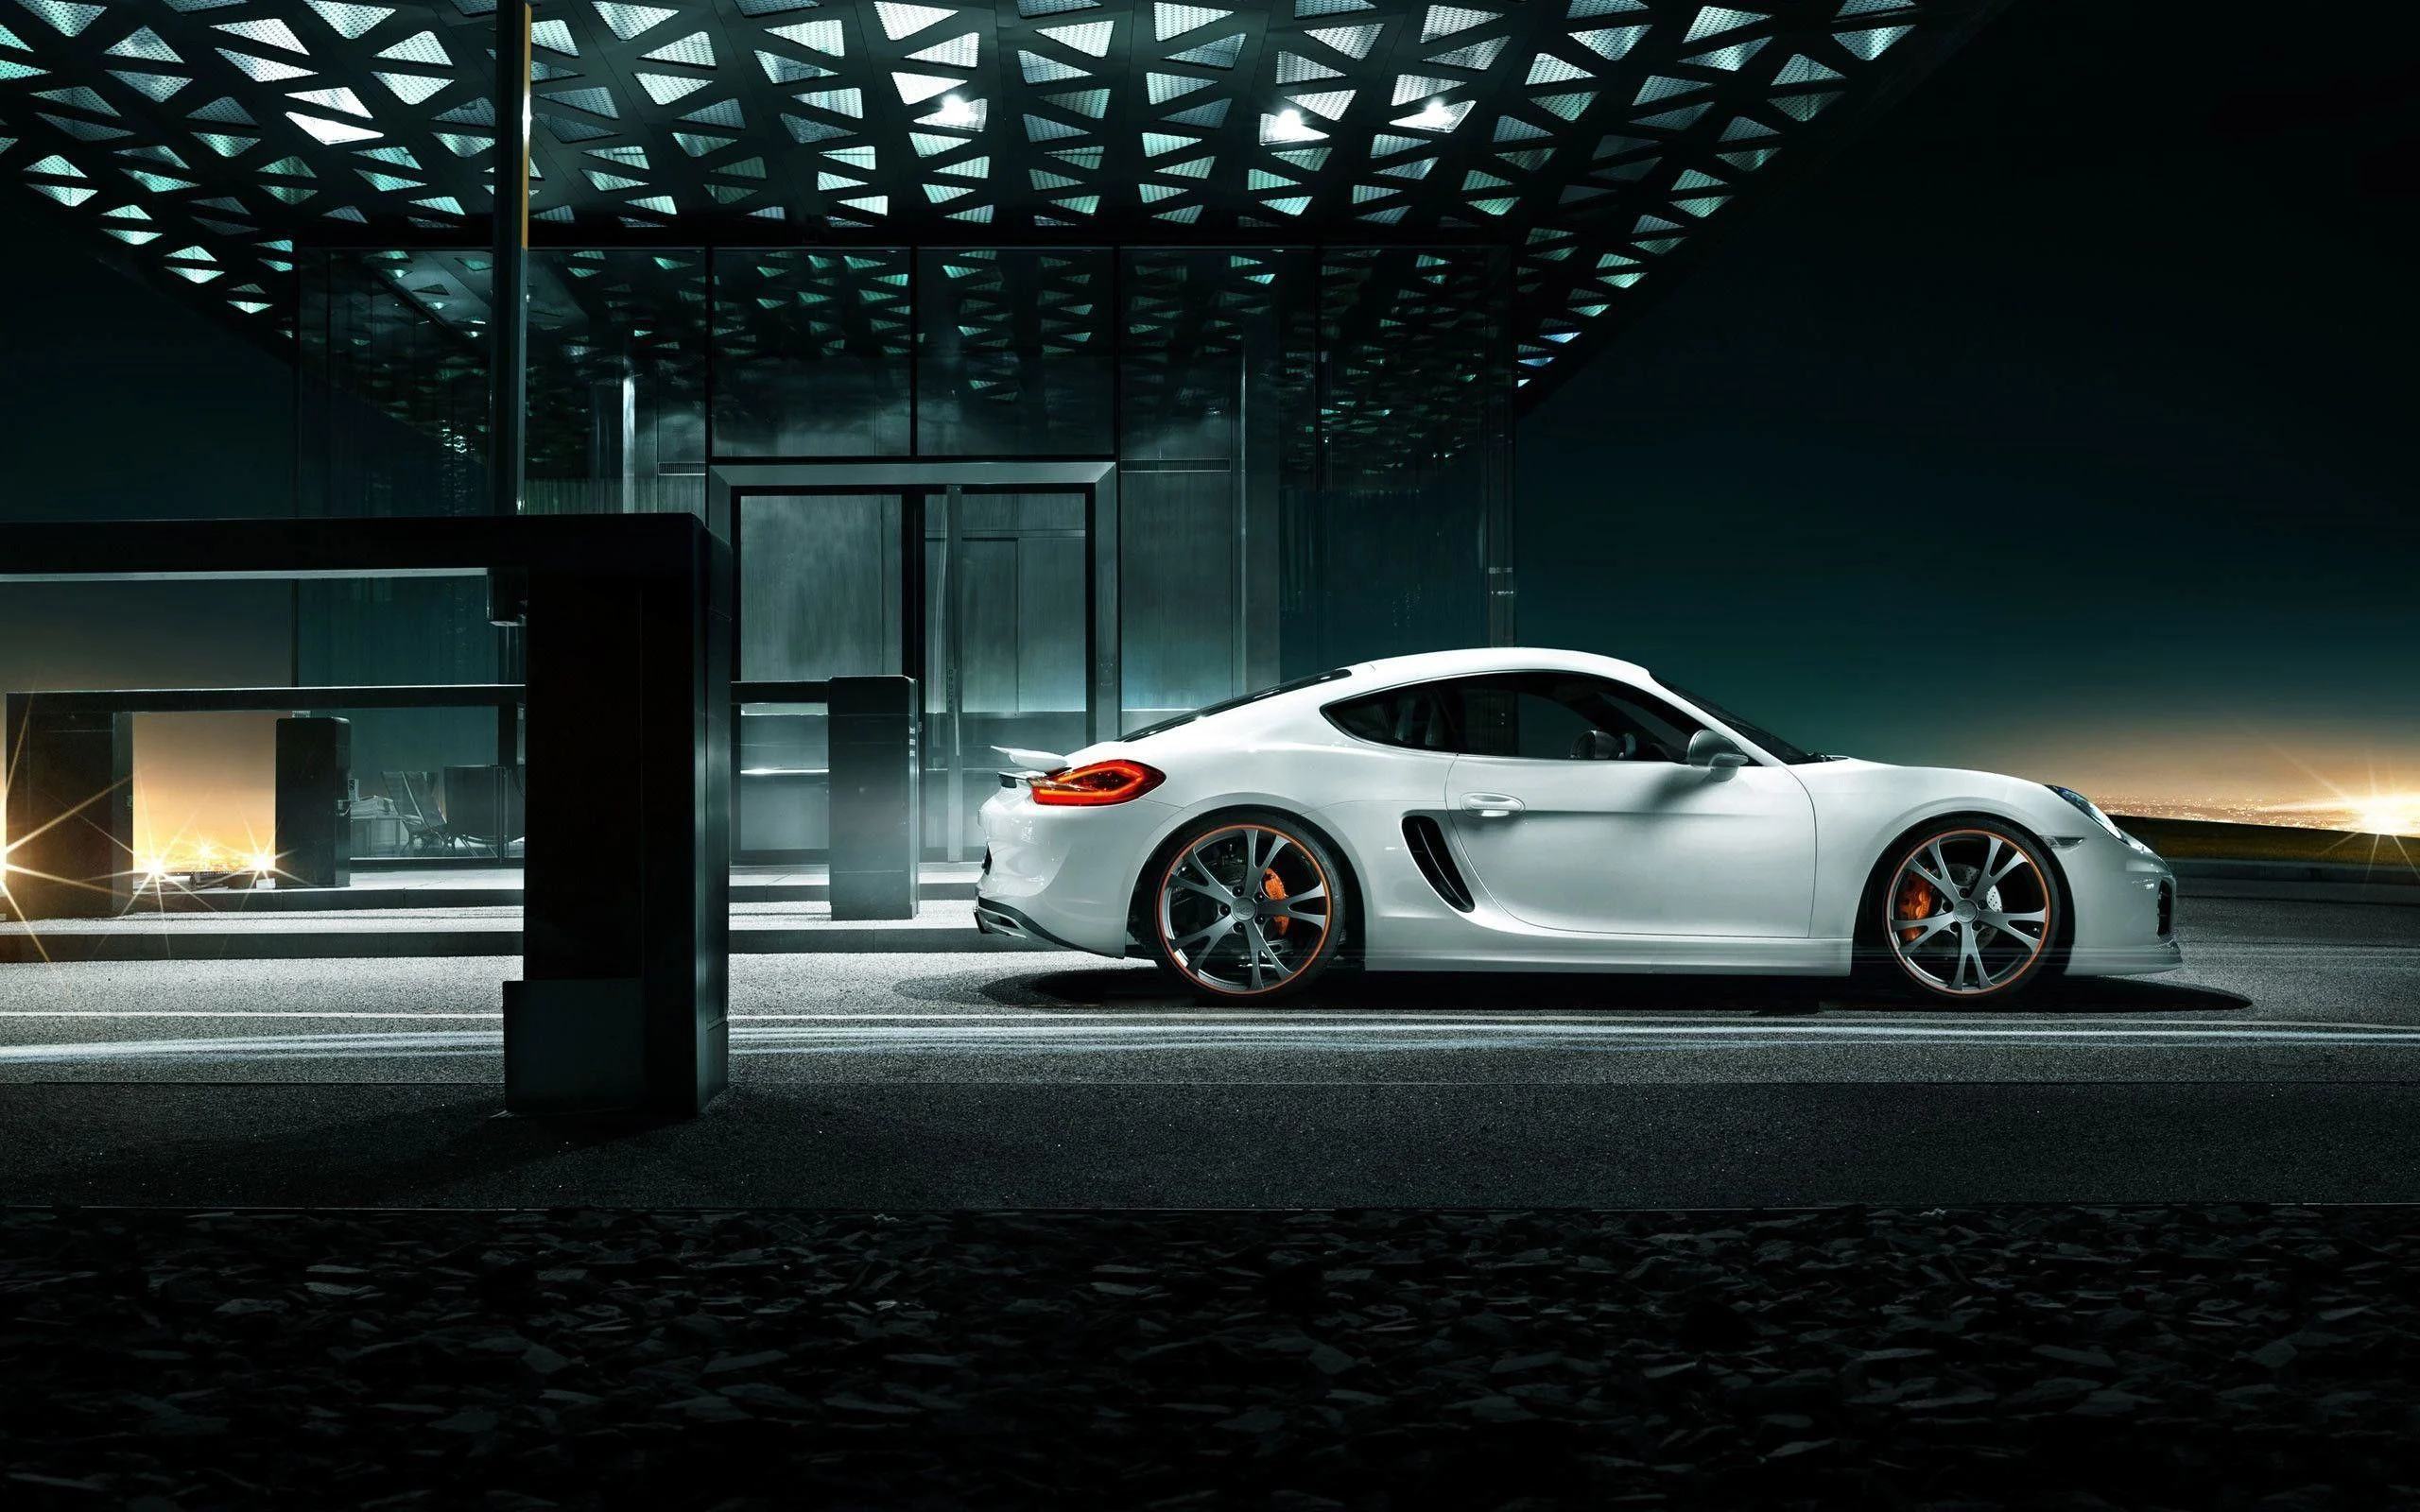 2560x1600 Porsche Cayman Wallpapers Top Free Porsche Cayman Backgrounds